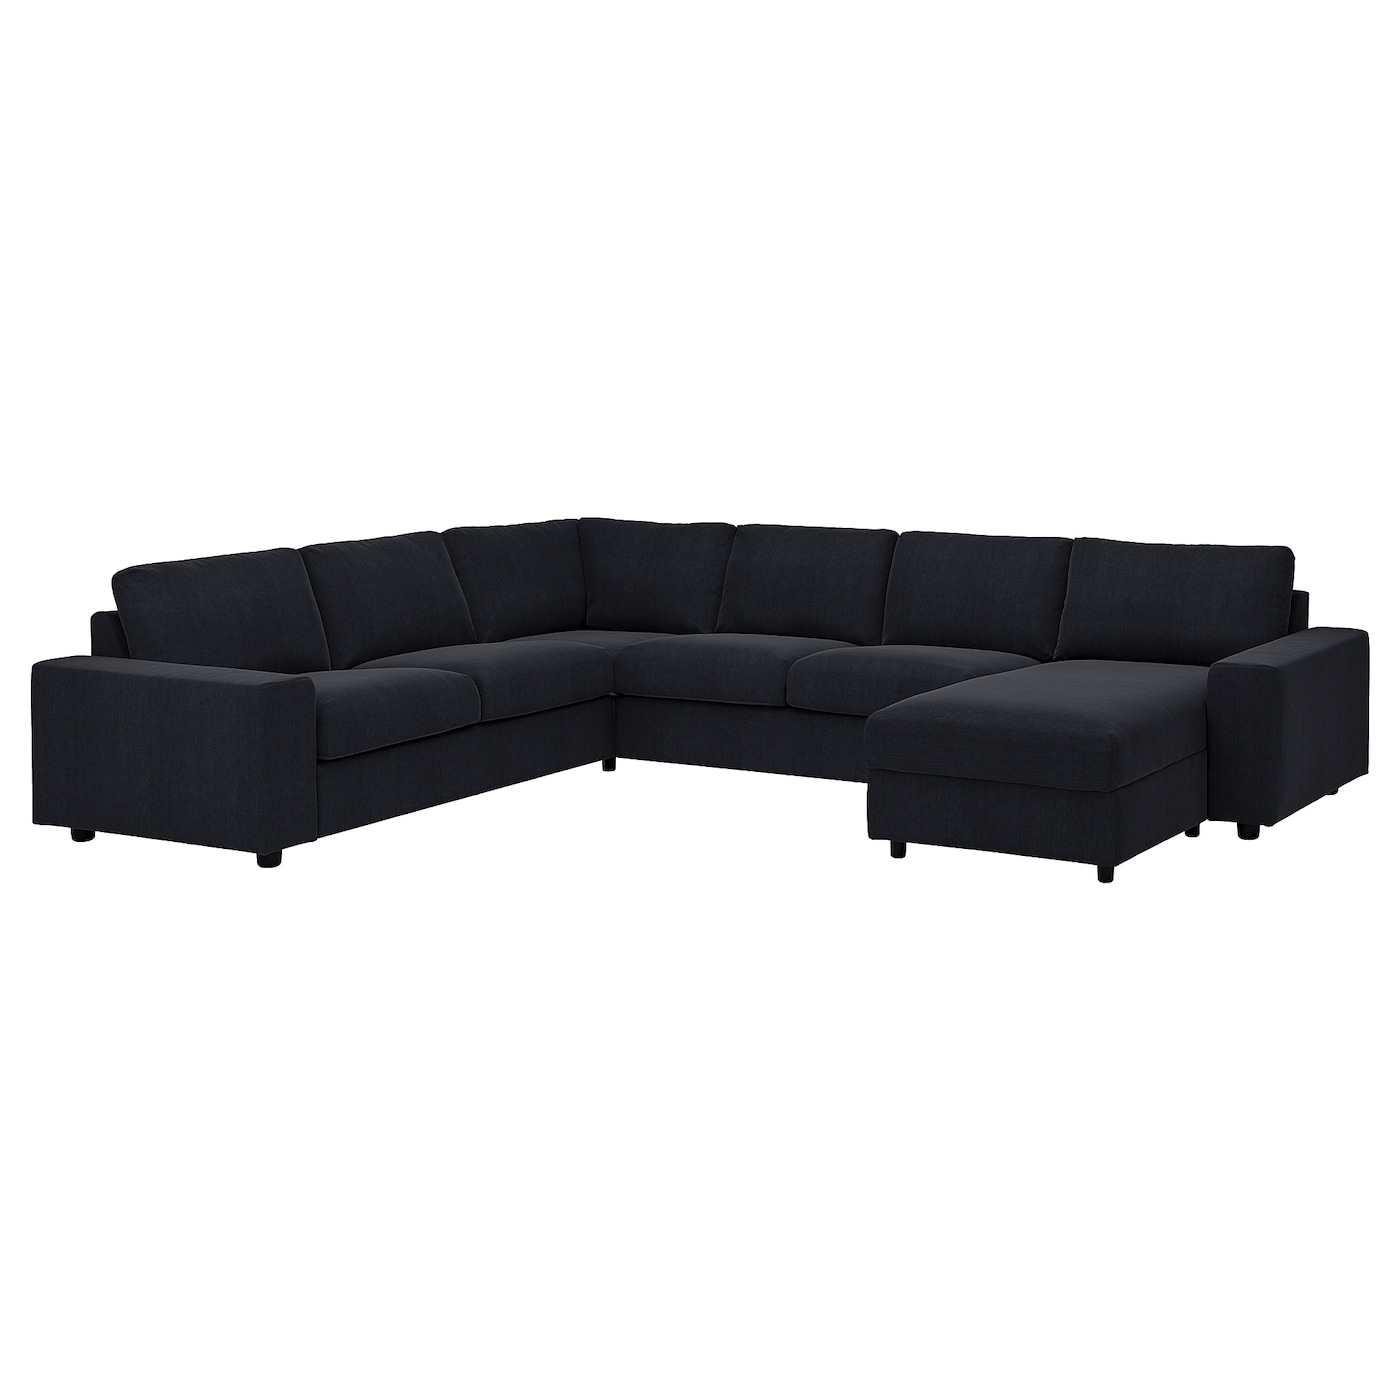 ВИМЛЕ Диван угловой, 5-местный. диван+диван, с широкими подлокотниками/Saxemara черно-синий VIMLE IKEA диван угловой bizzotto 0662861